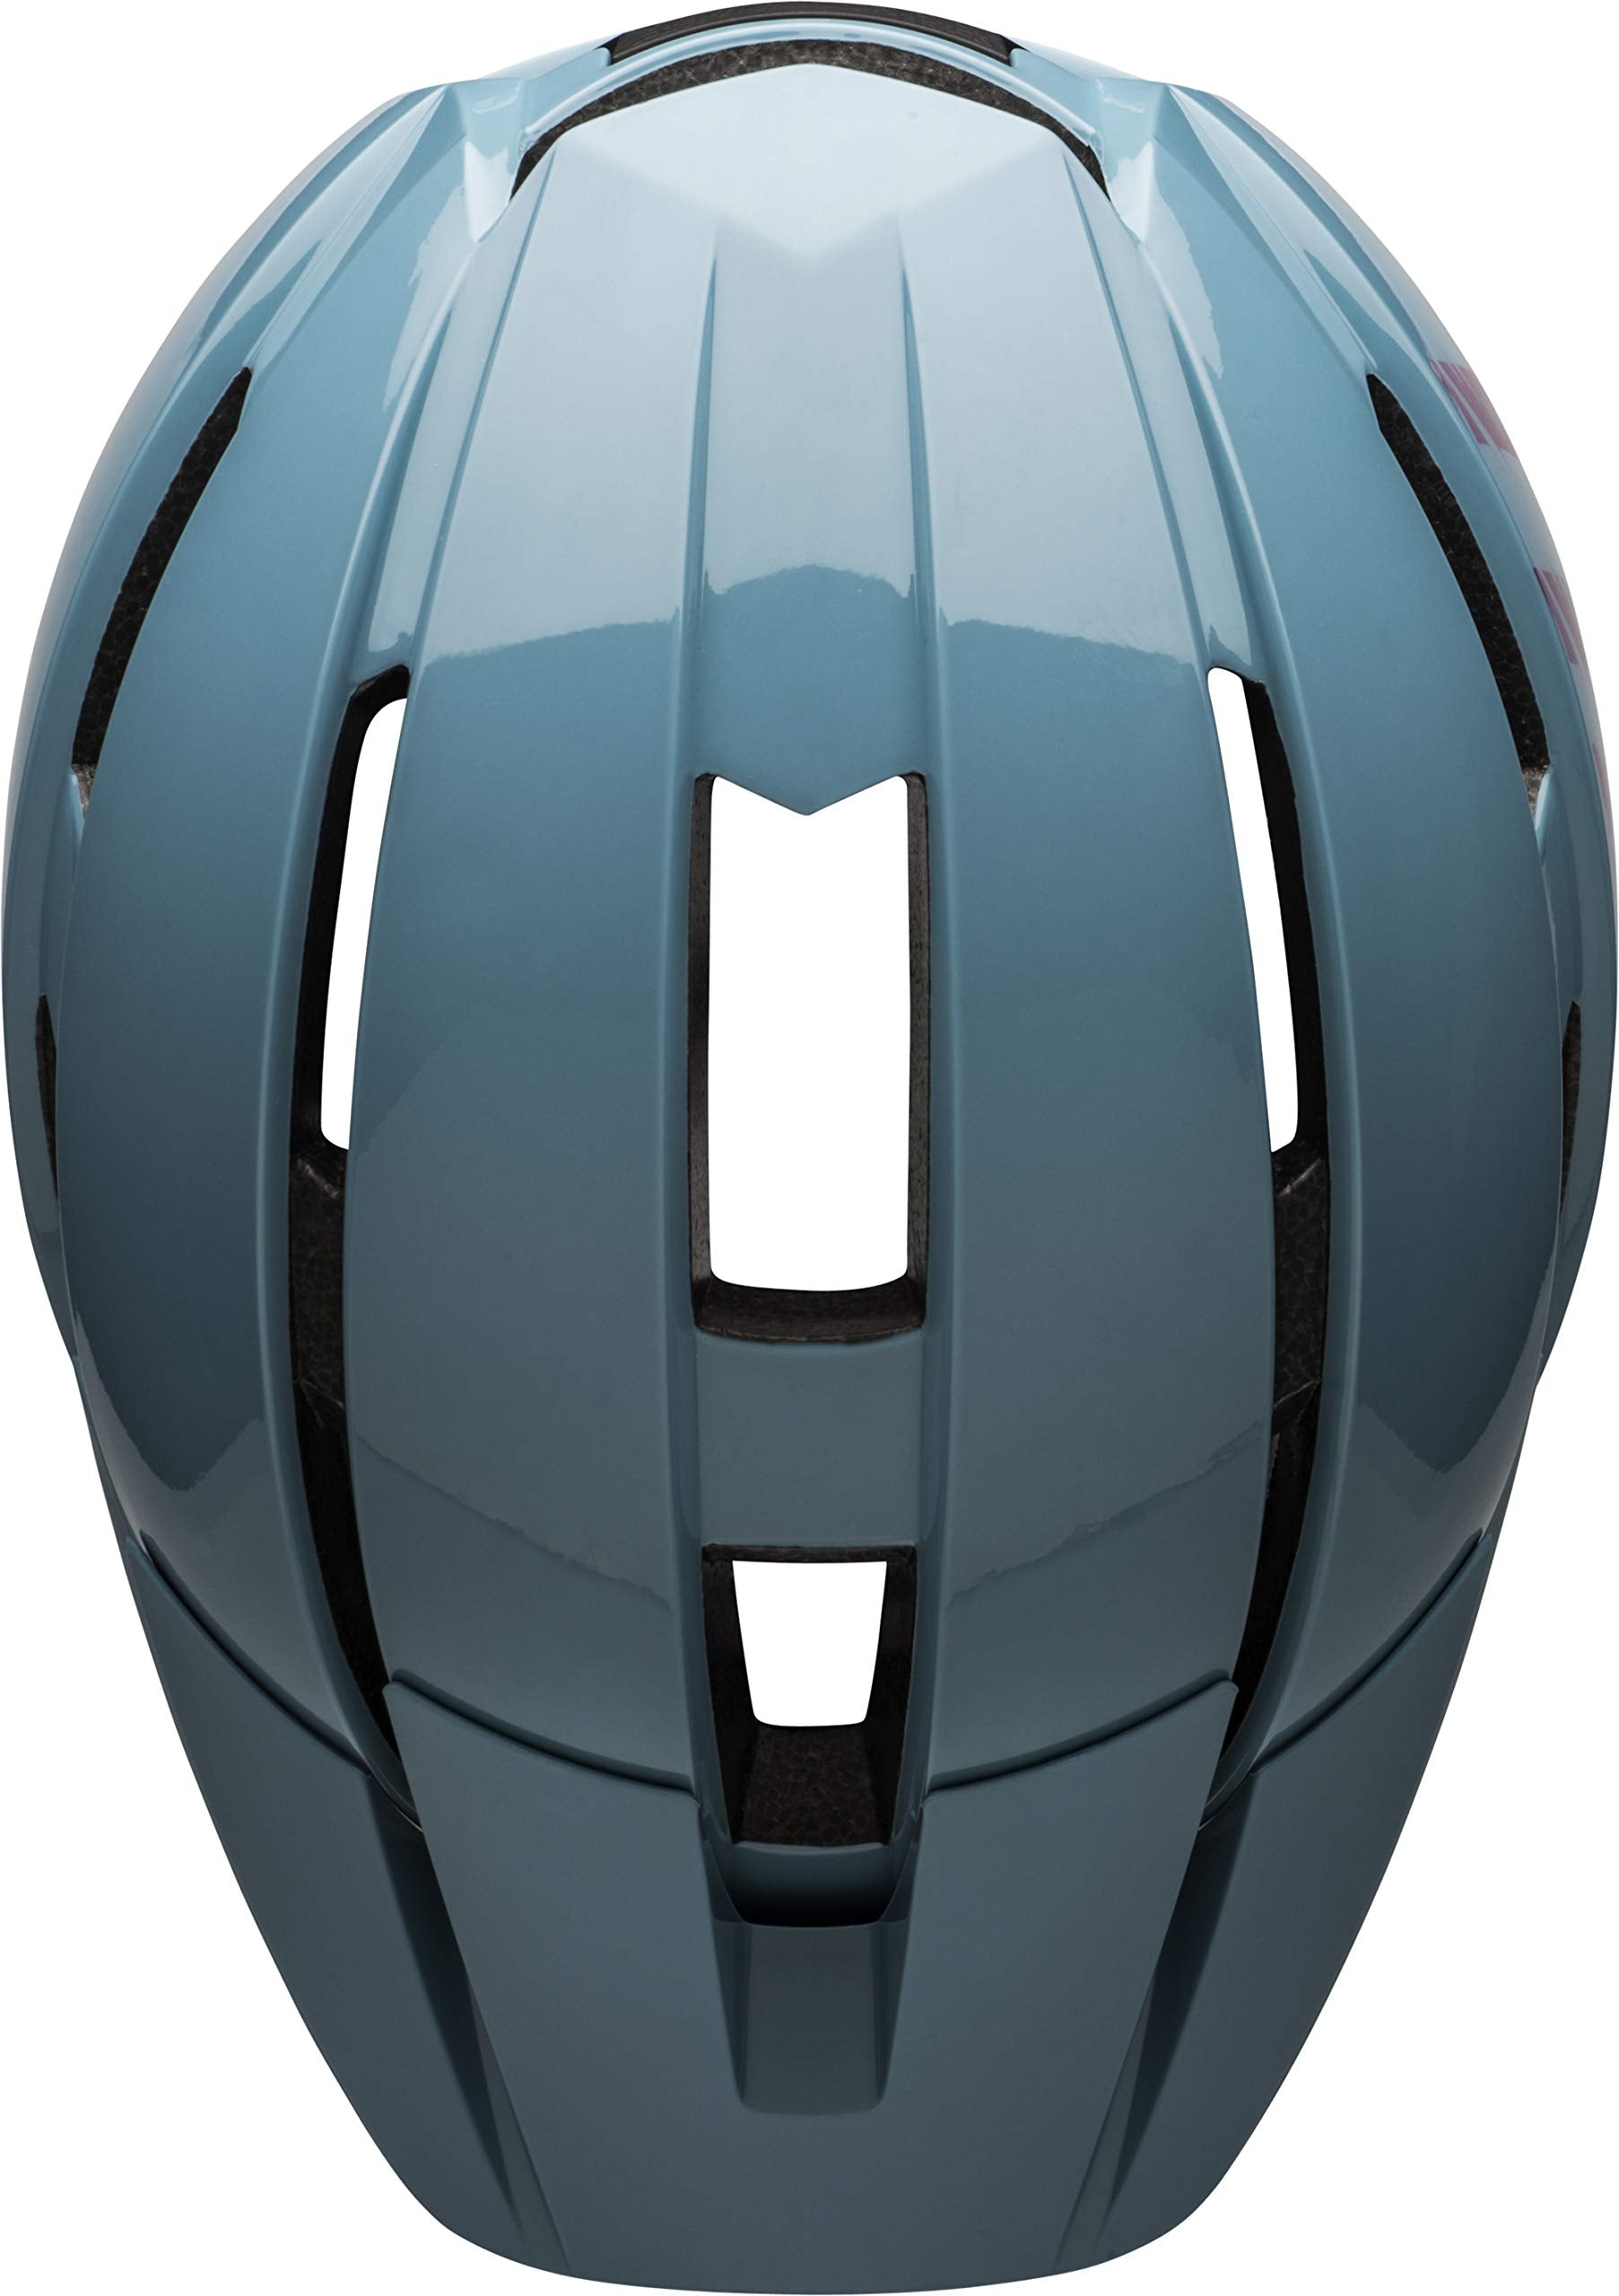 BELL Sidetrack II Youth Bike Helmet  - Very Good